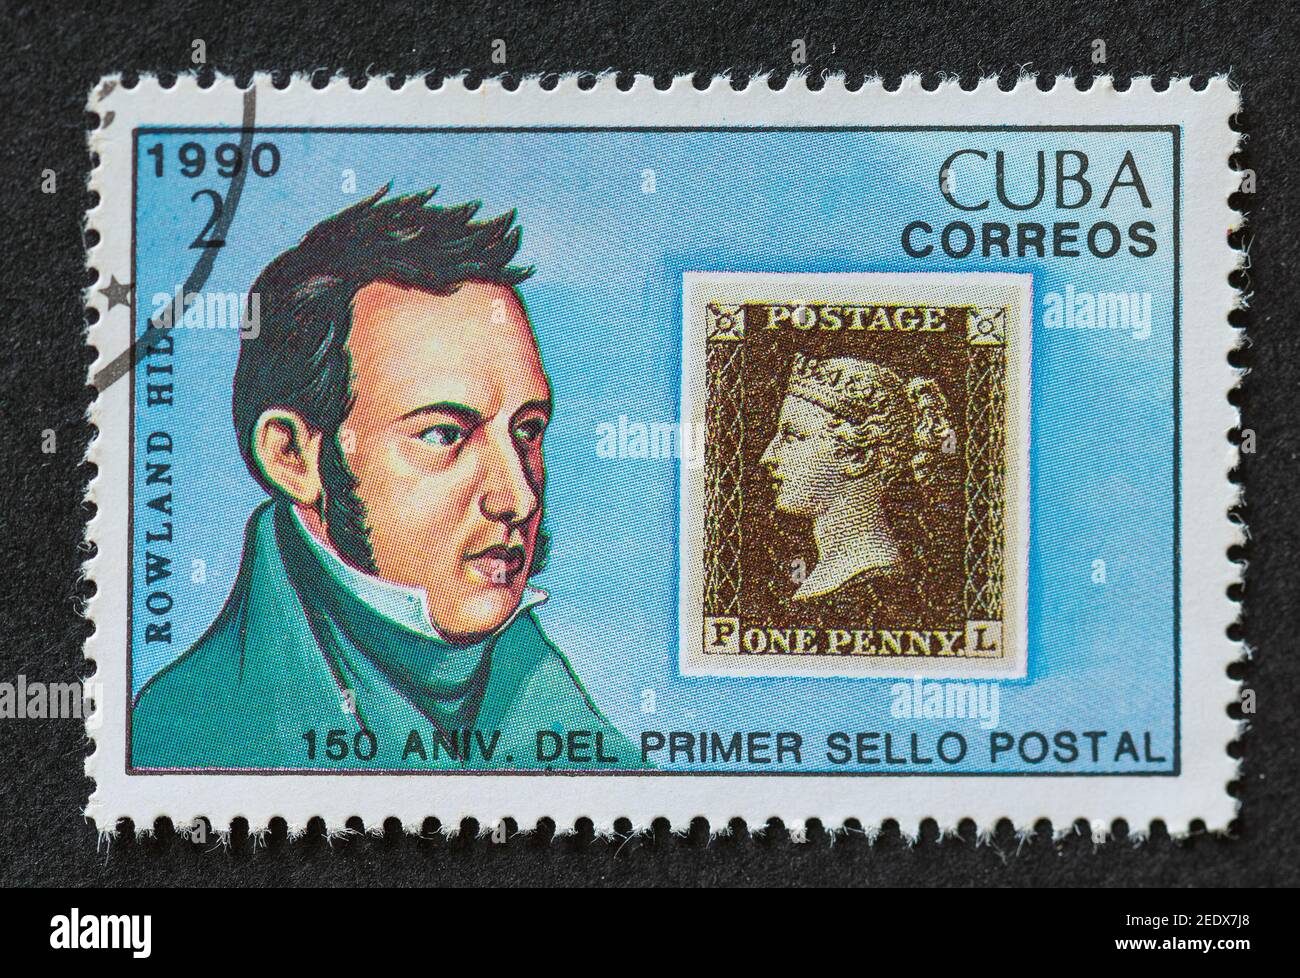 Sellos postales cubanos antiguos Foto de stock